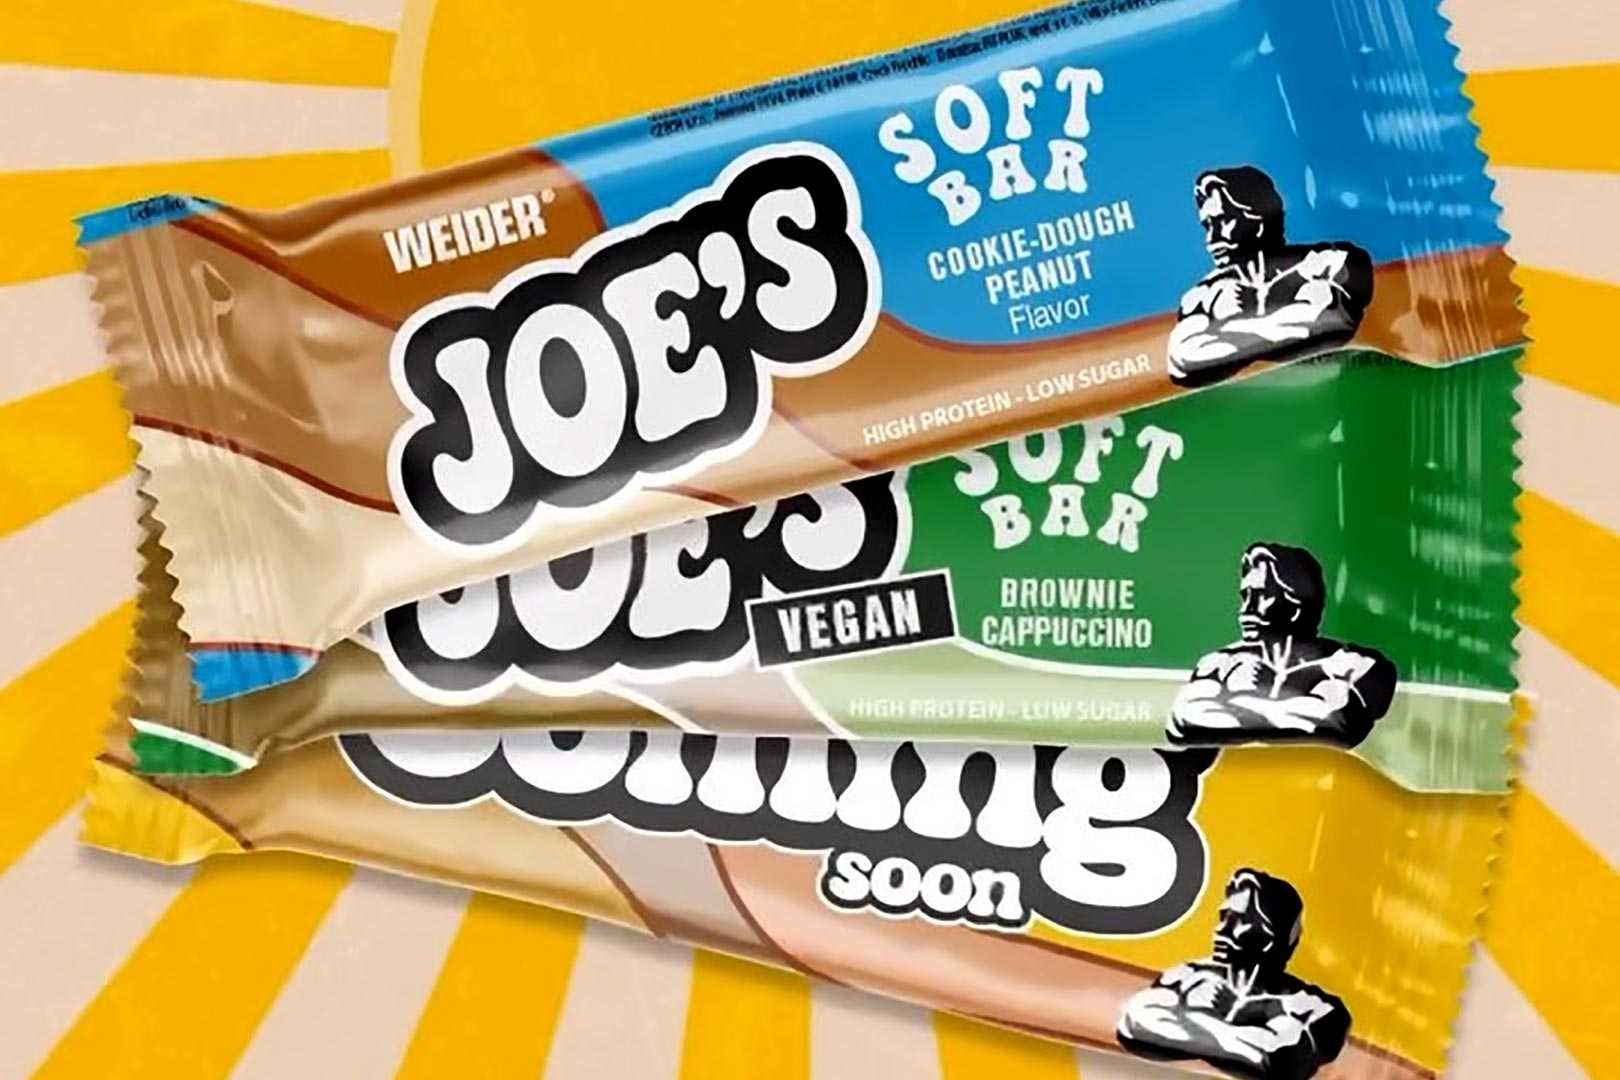 Weider Joes Soft Bar